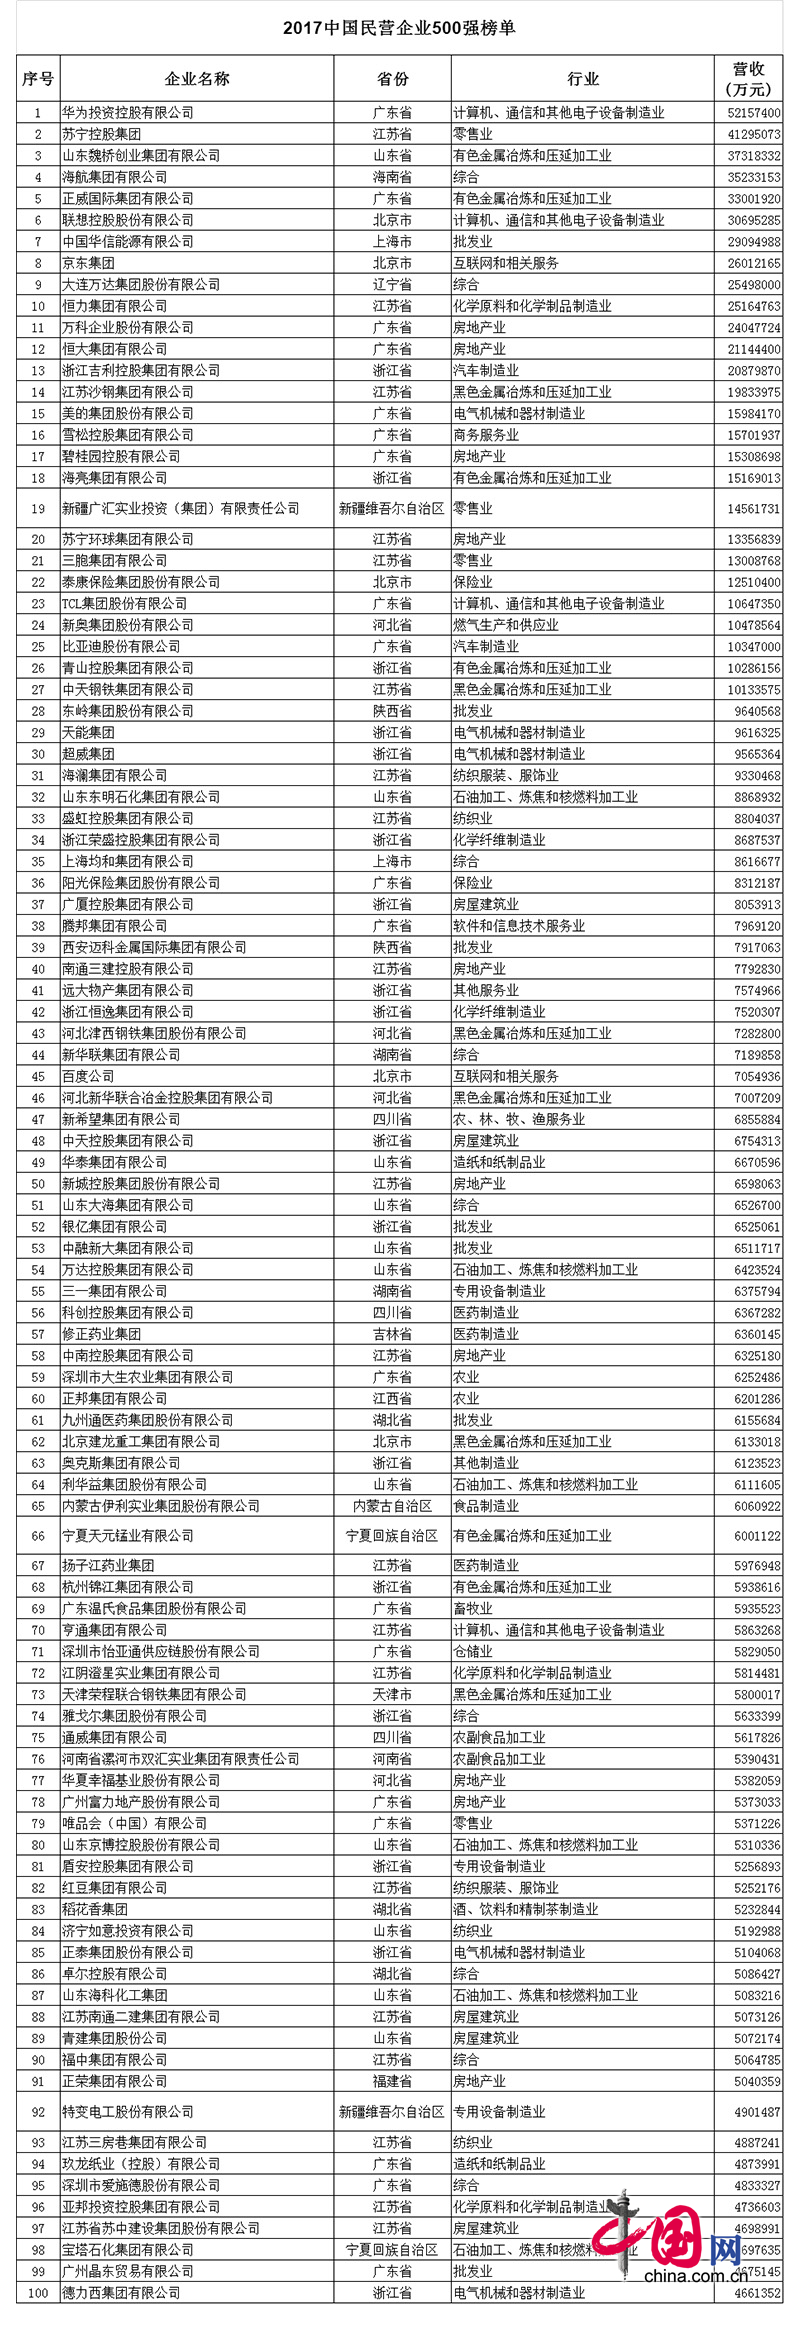 2017中国民营企业500强榜单